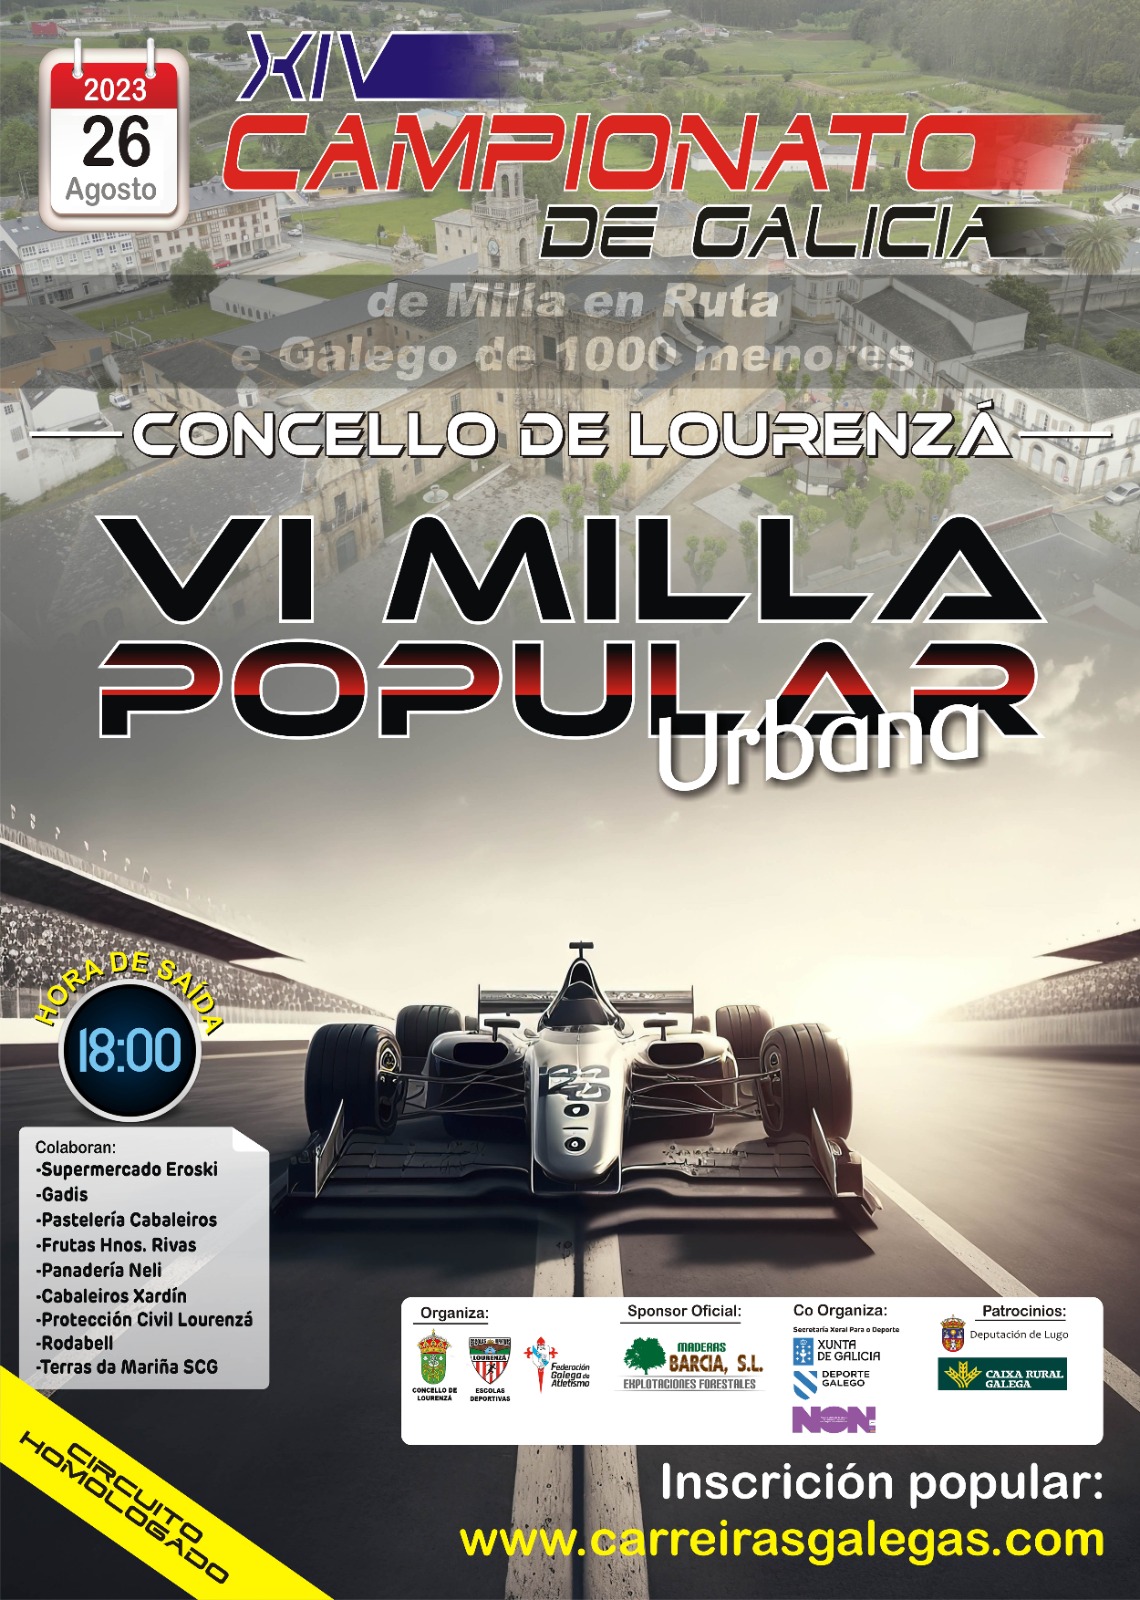 XIV Campionato Xunta de Galicia de Milla en Ruta e Cto. Xunta de Galicia de 1Km 2023